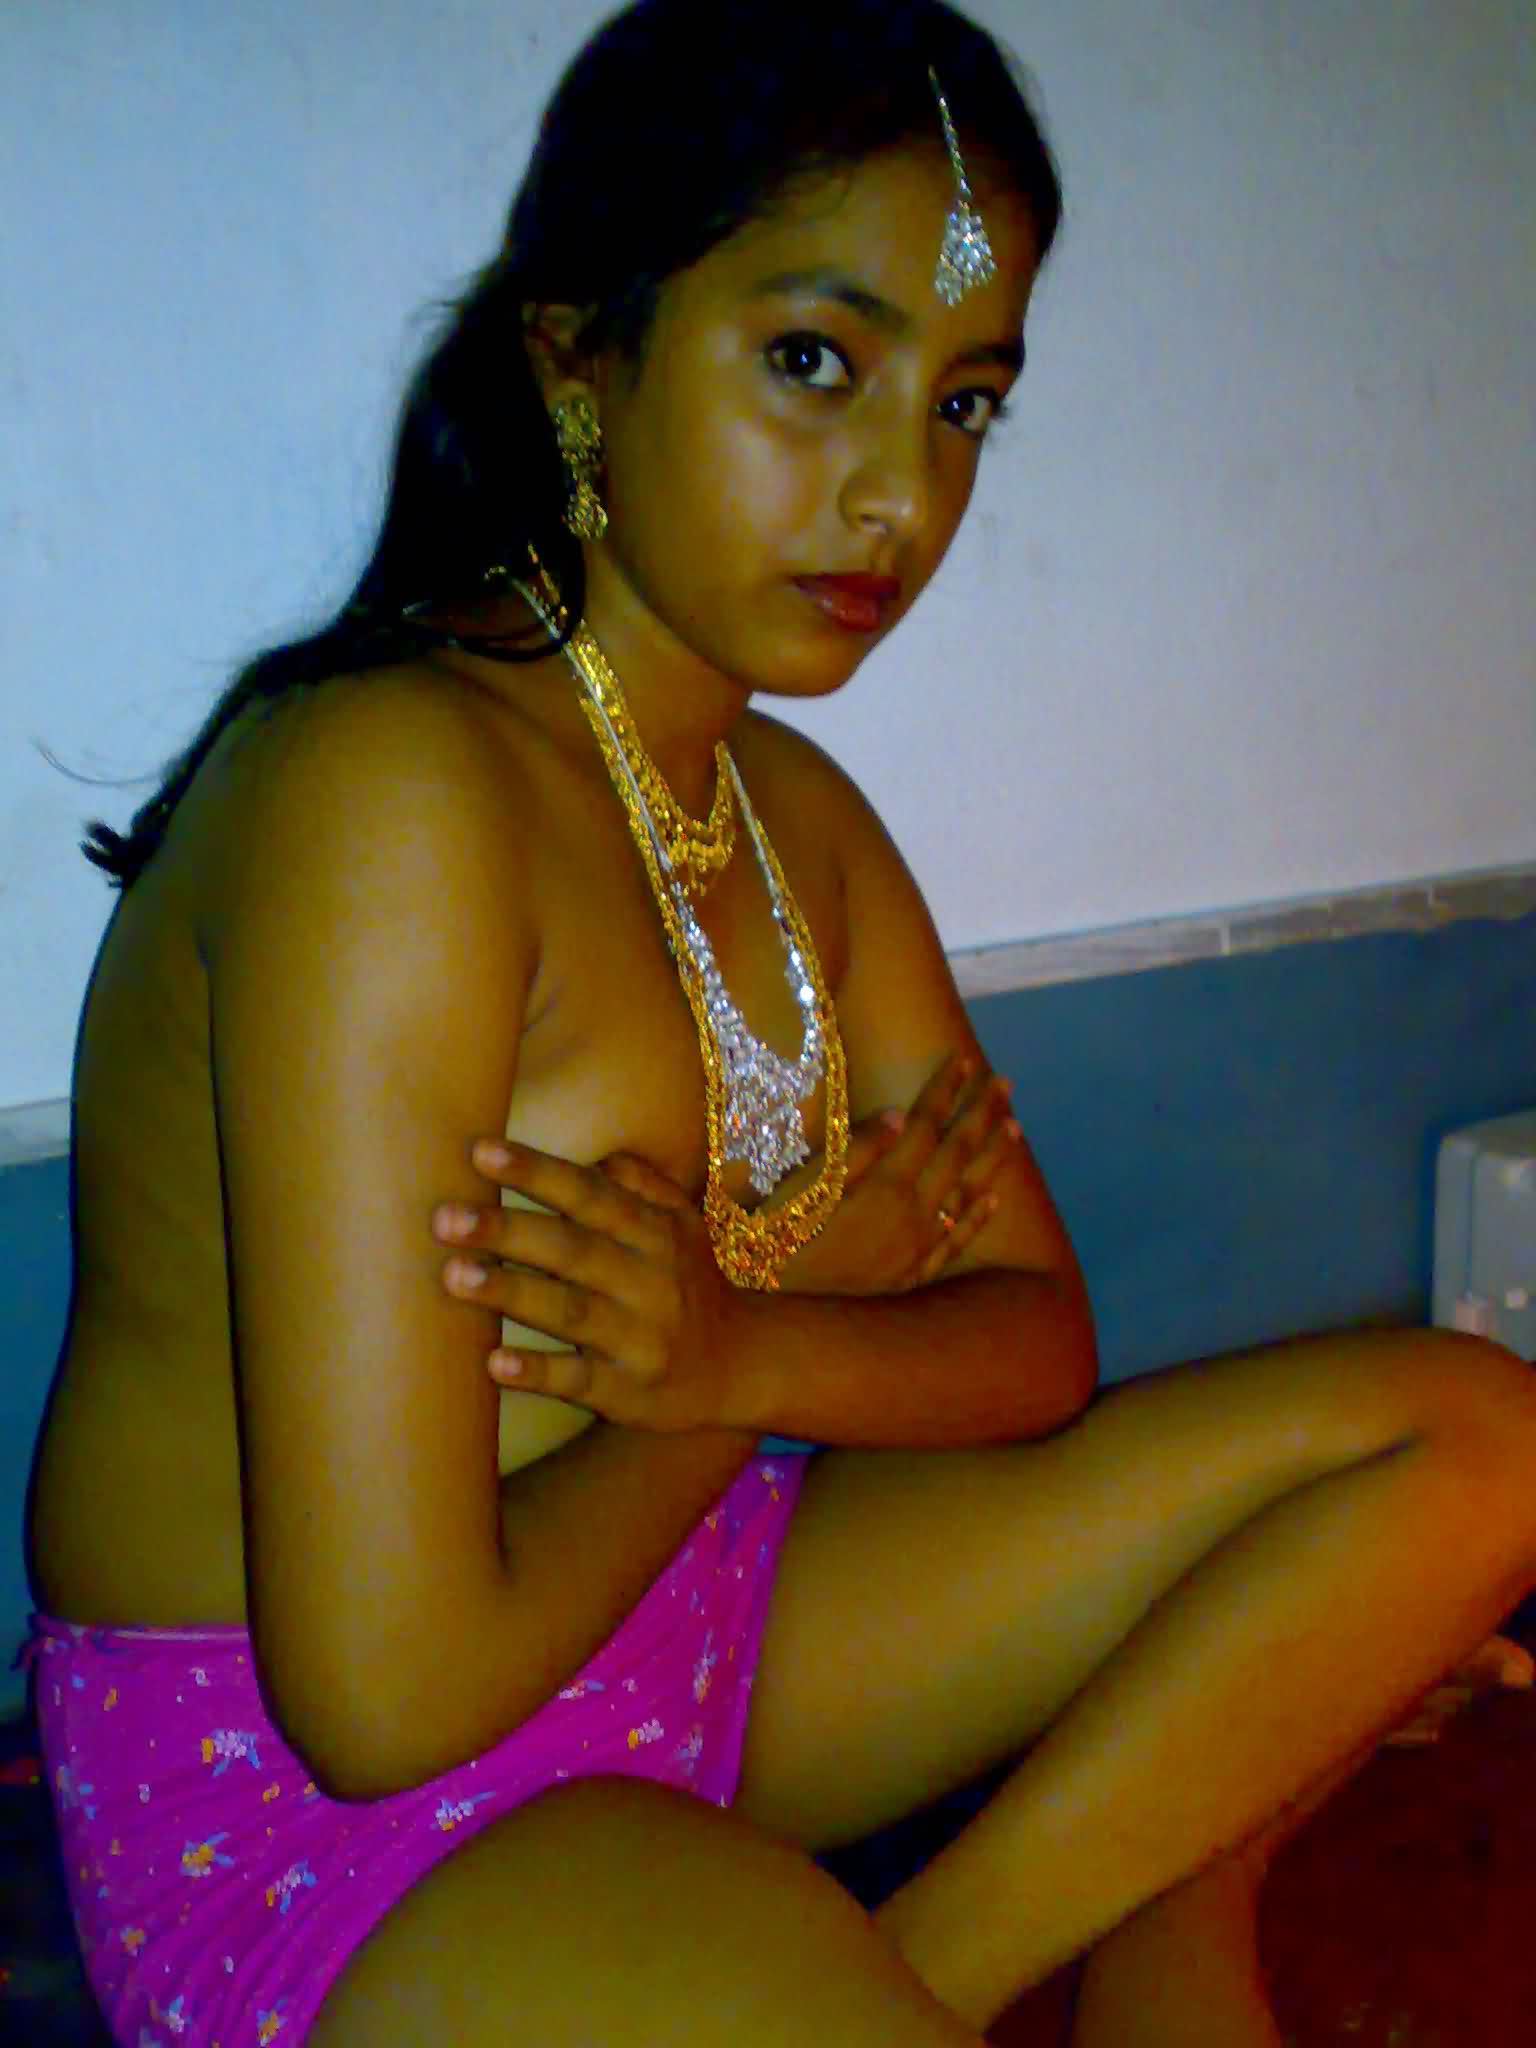 Rajasthani Village Girl Nude Photos - Rajasthani Bhabhi Nude Photos Nangi Chut Gand Sex Images